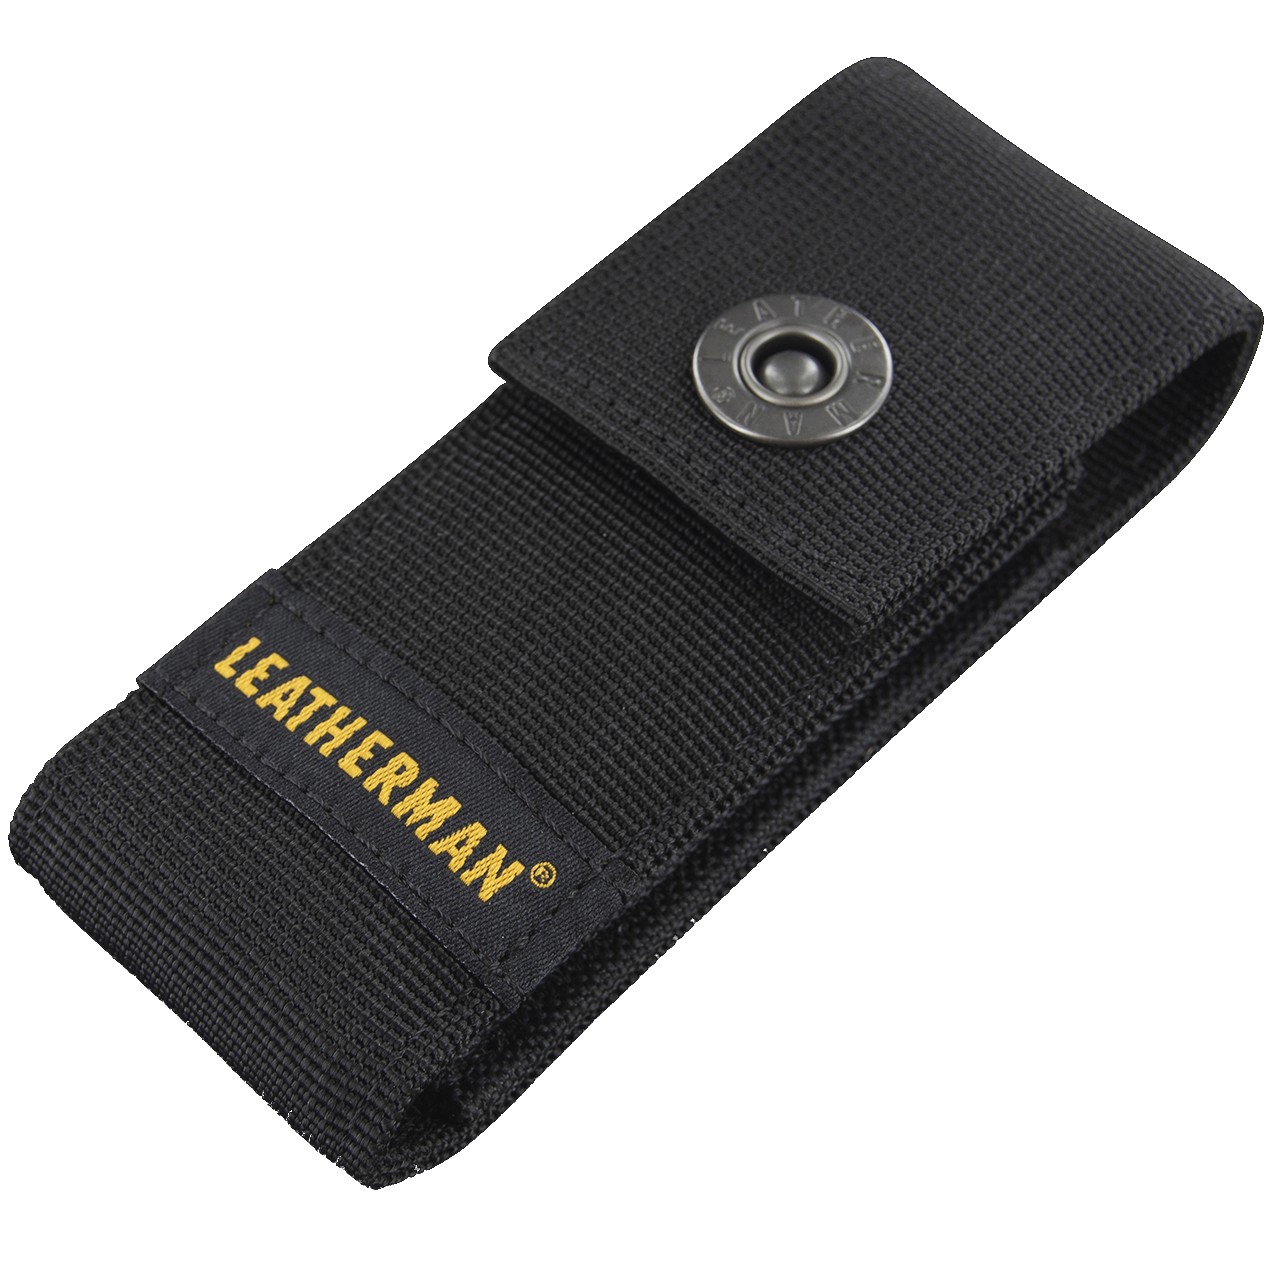 Leatherman Wingman Pocket Multitool & Sheath